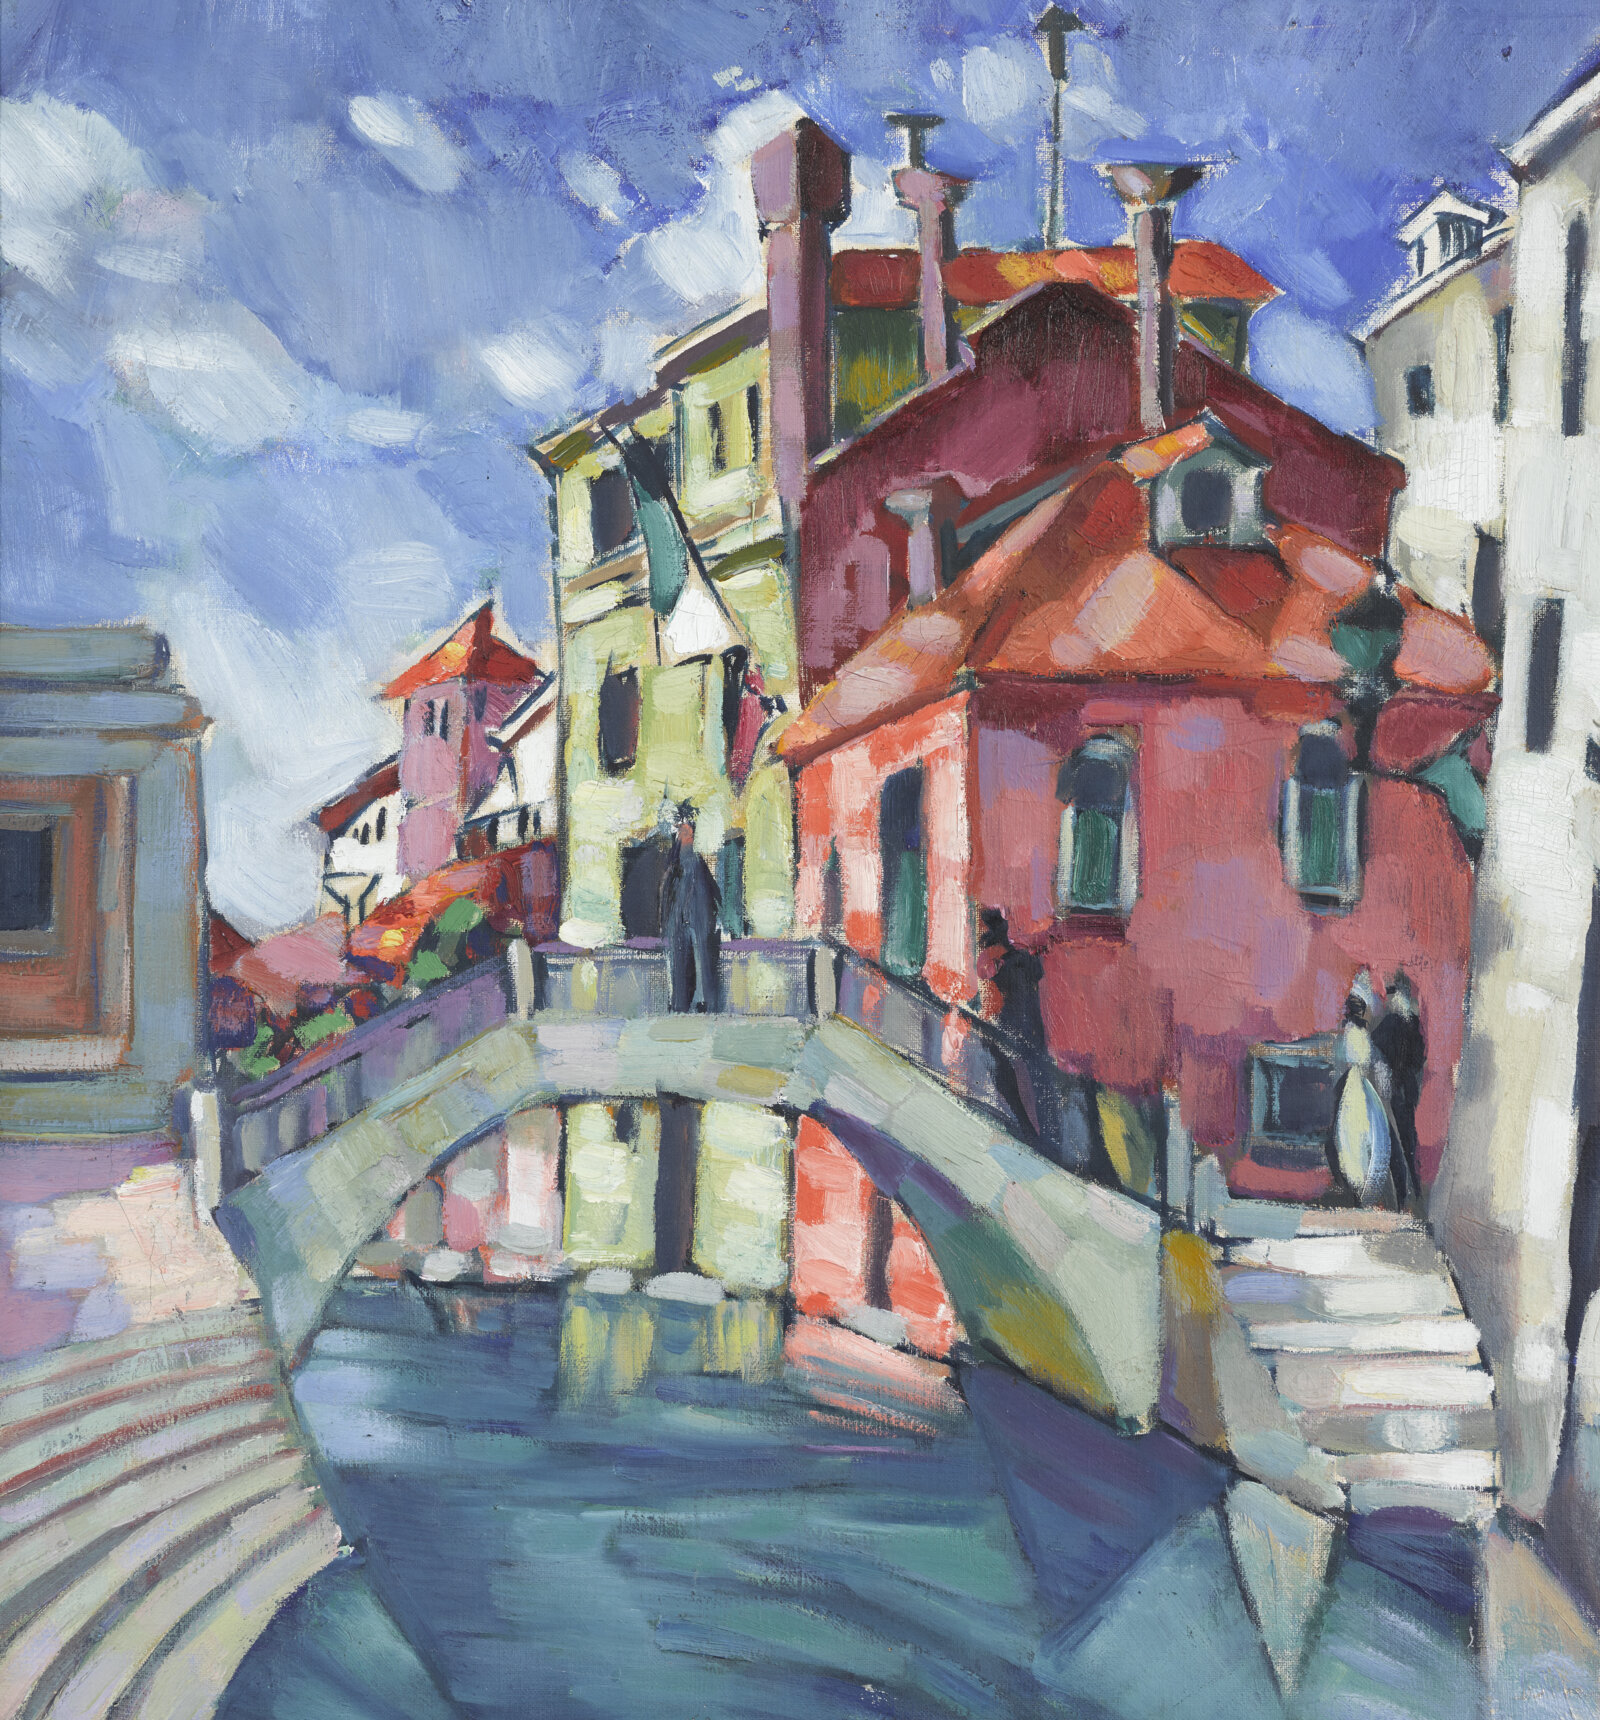 Konrad Mägi, Venezia (Kanal i Venezia), 1922–1923, Estlands kunstmuseum